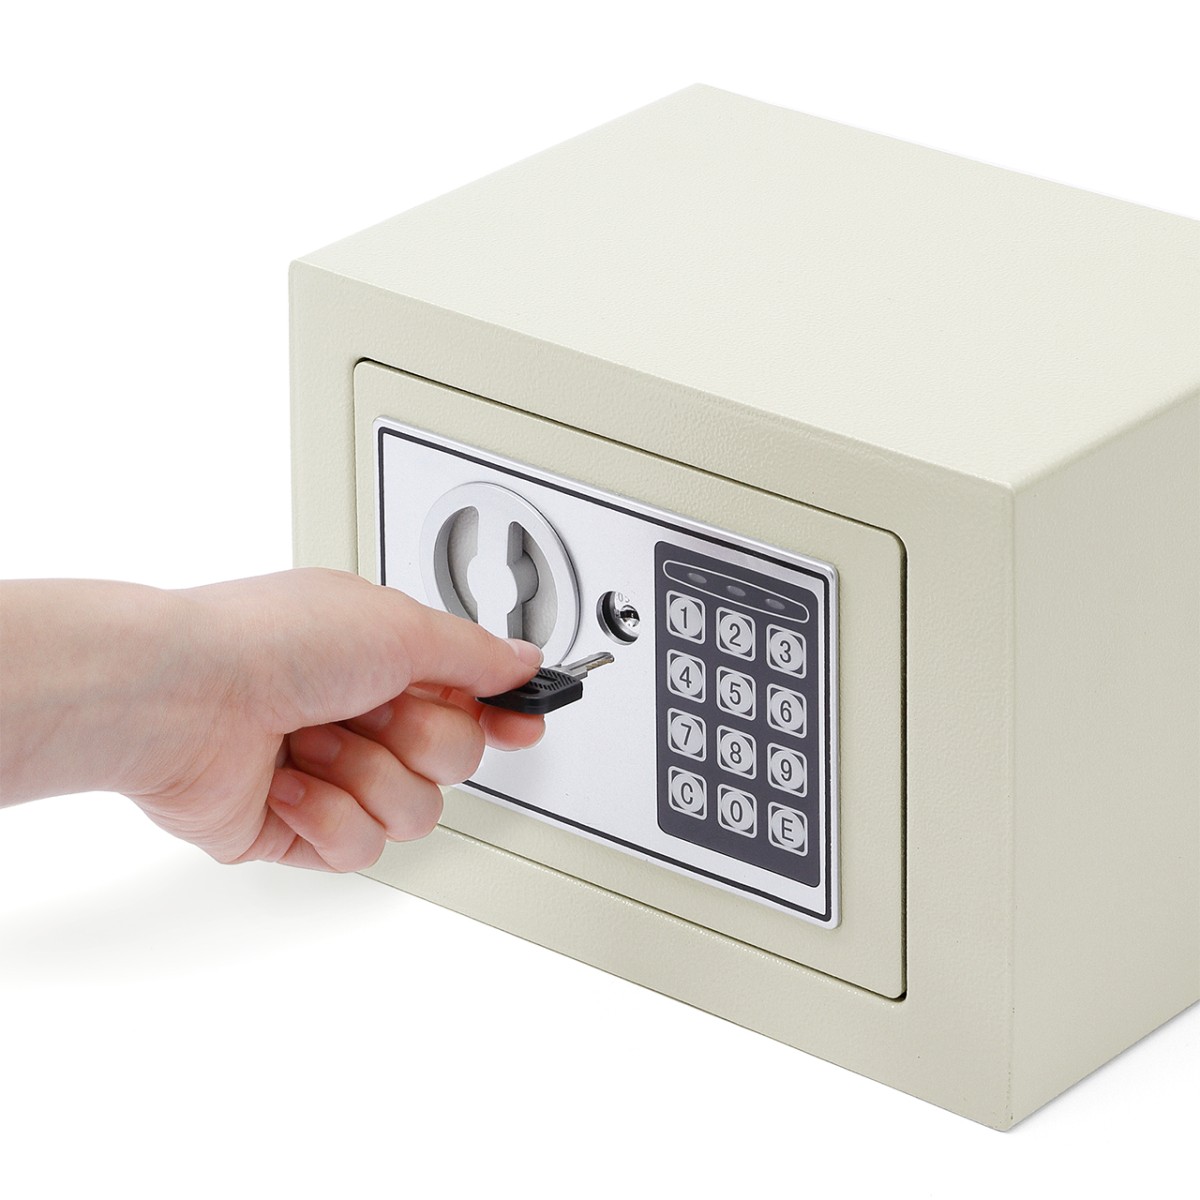 金庫 家庭用 小型 電子金庫 防犯対策 セキュリティー 鍵付き テンキー